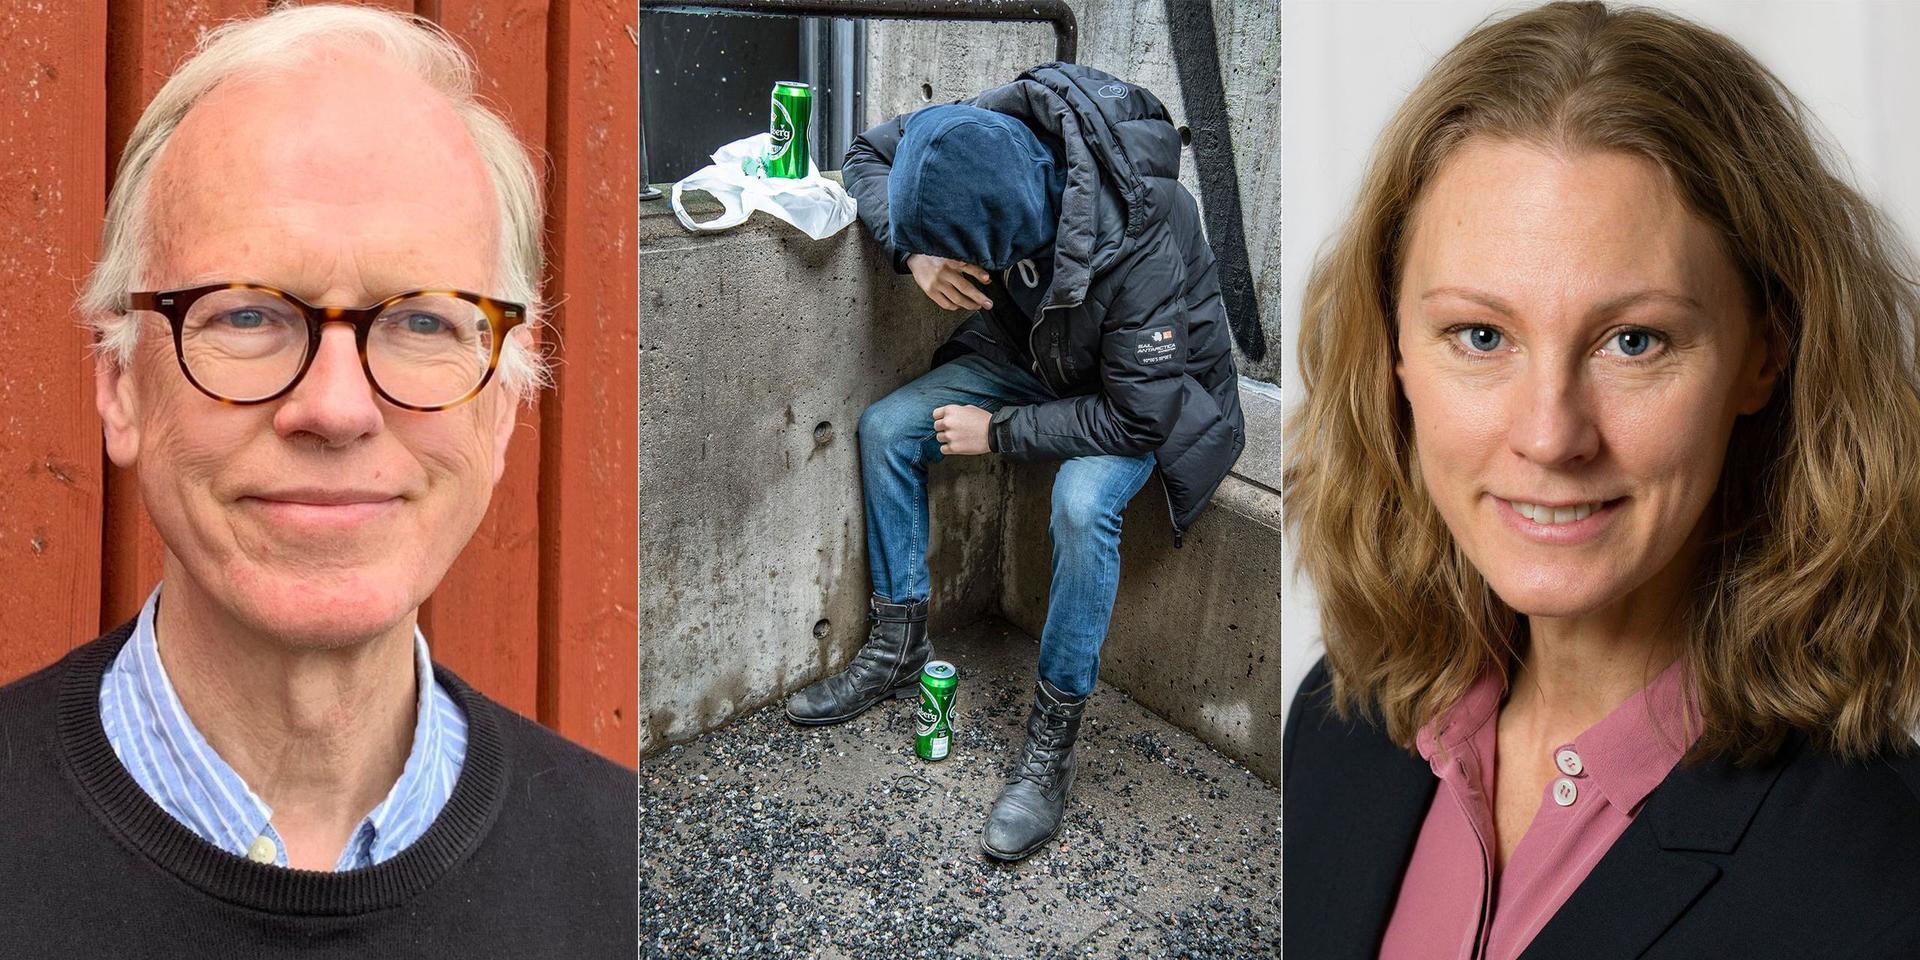 Alkohol är fortfarande den substans som orsakar flest skador i Sverige, bland vuxna såväl som bland ungdomar, skriver debattörerna.